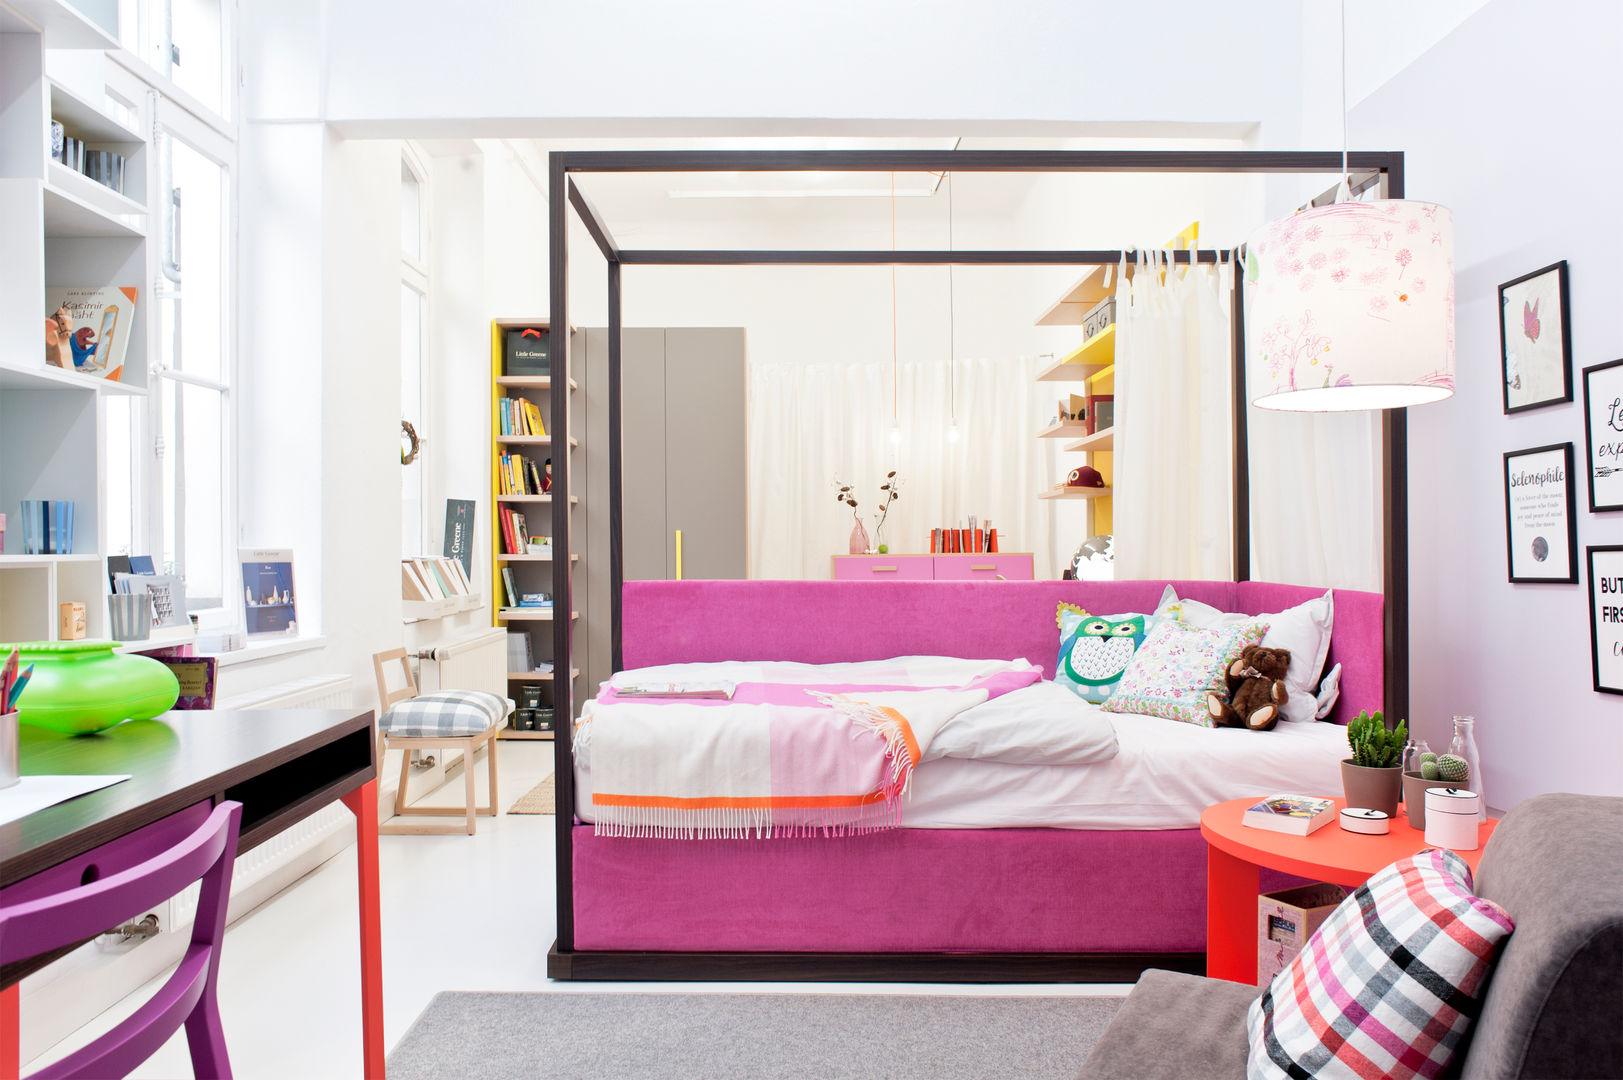 Ideen für ein modernes Jugendzimmer / Teeniezimmer, MOBIMIO - Räume für Kinder MOBIMIO - Räume für Kinder غرفة الاطفال خشب Wood effect Beds & cribs